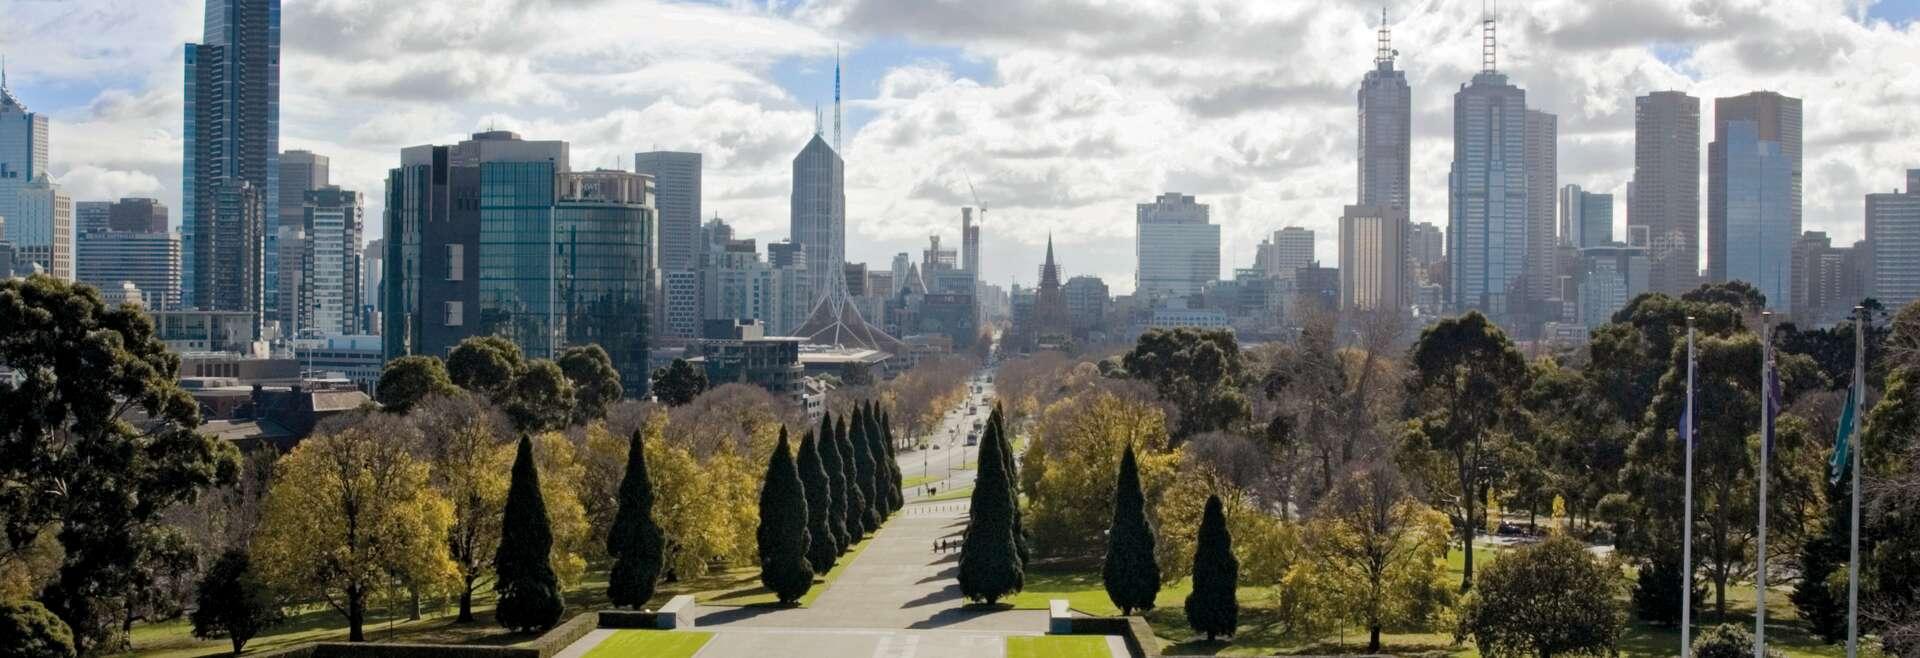 Séjour linguistique Australie, Melbourne - Skyline